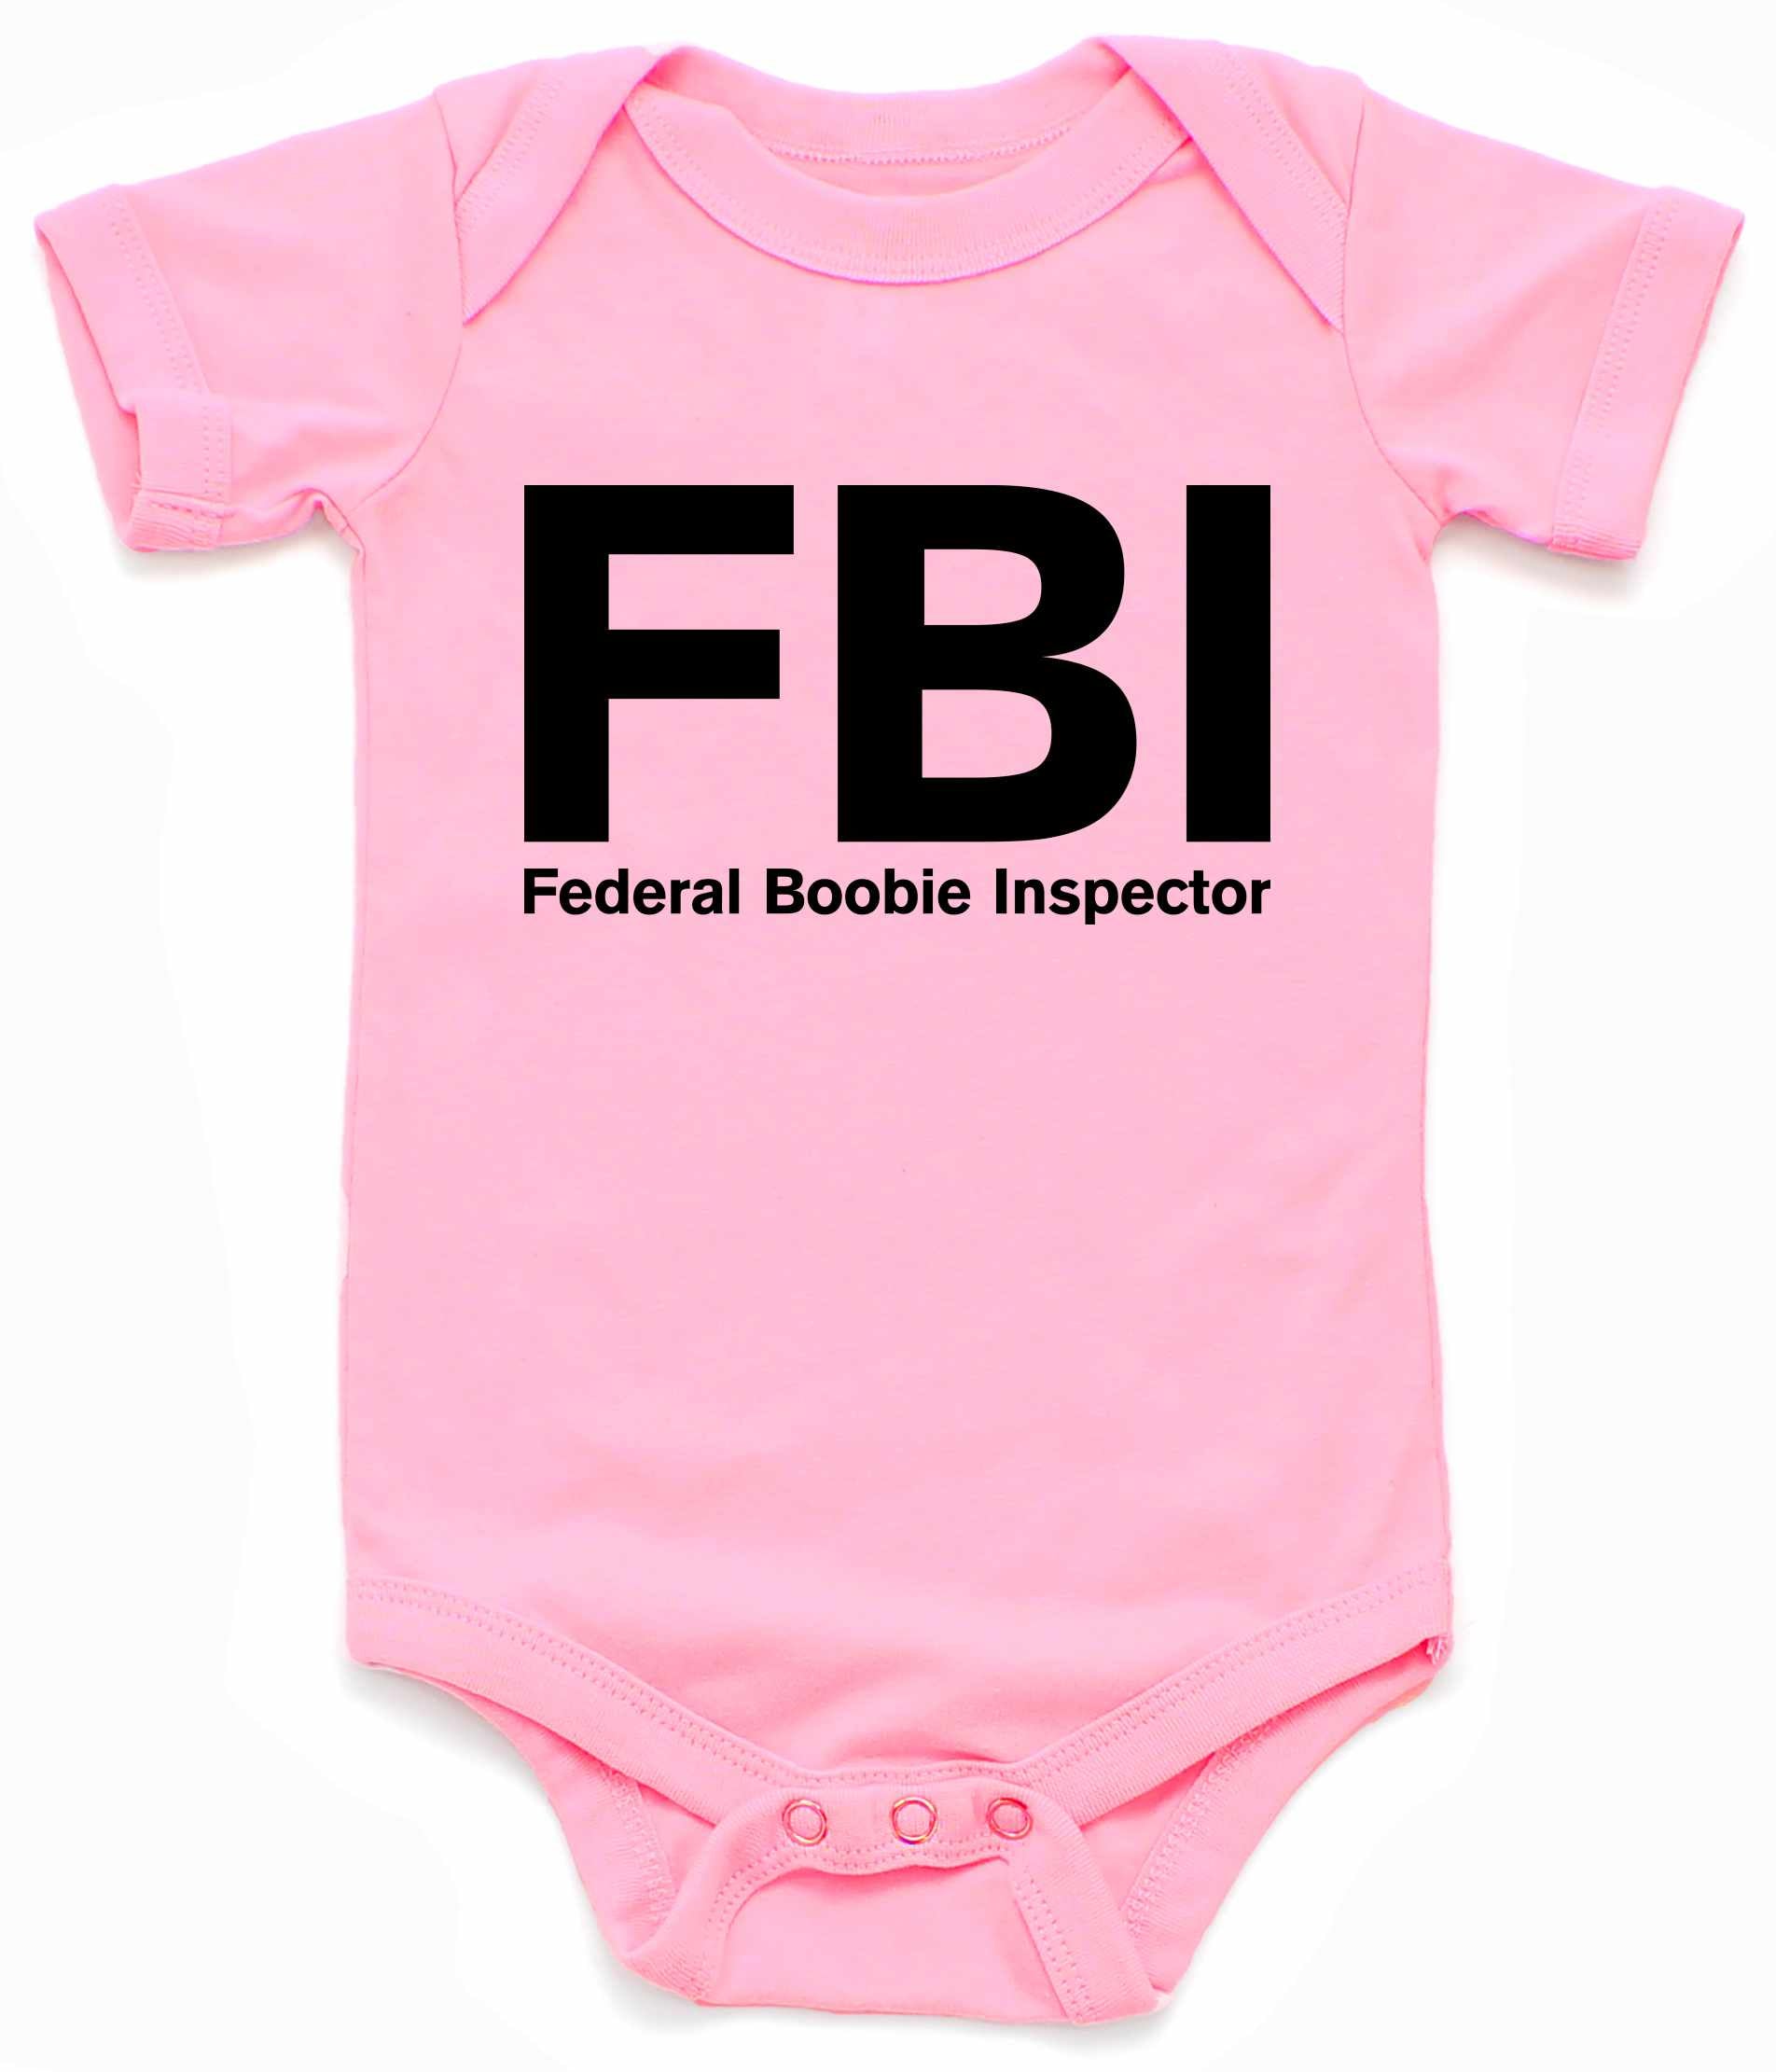 Federal Boobie Inspector Infant BodySuit - Pink / NewBorn - Pink / 6 Month - Pink / 12 Month - Pink / 18 Month - Pink / 24 Month